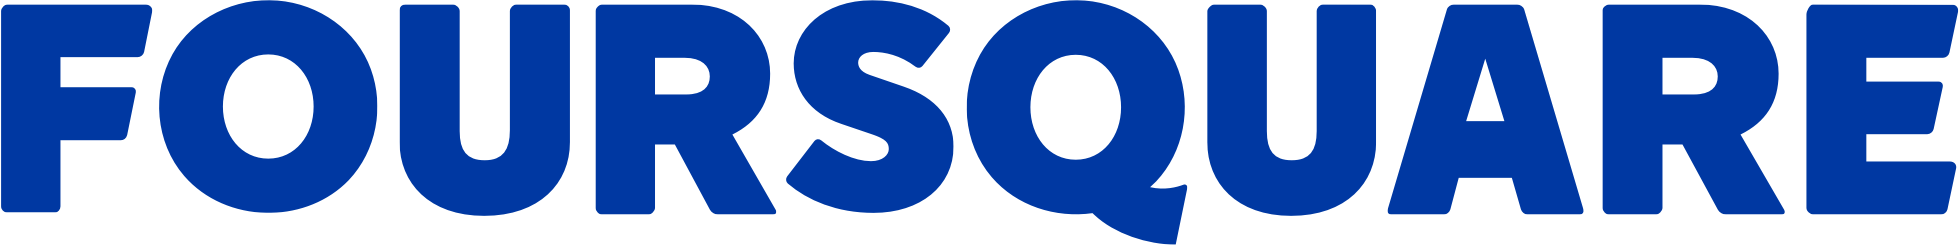 Foursquare Logo Company - Foursquare (1959x246)